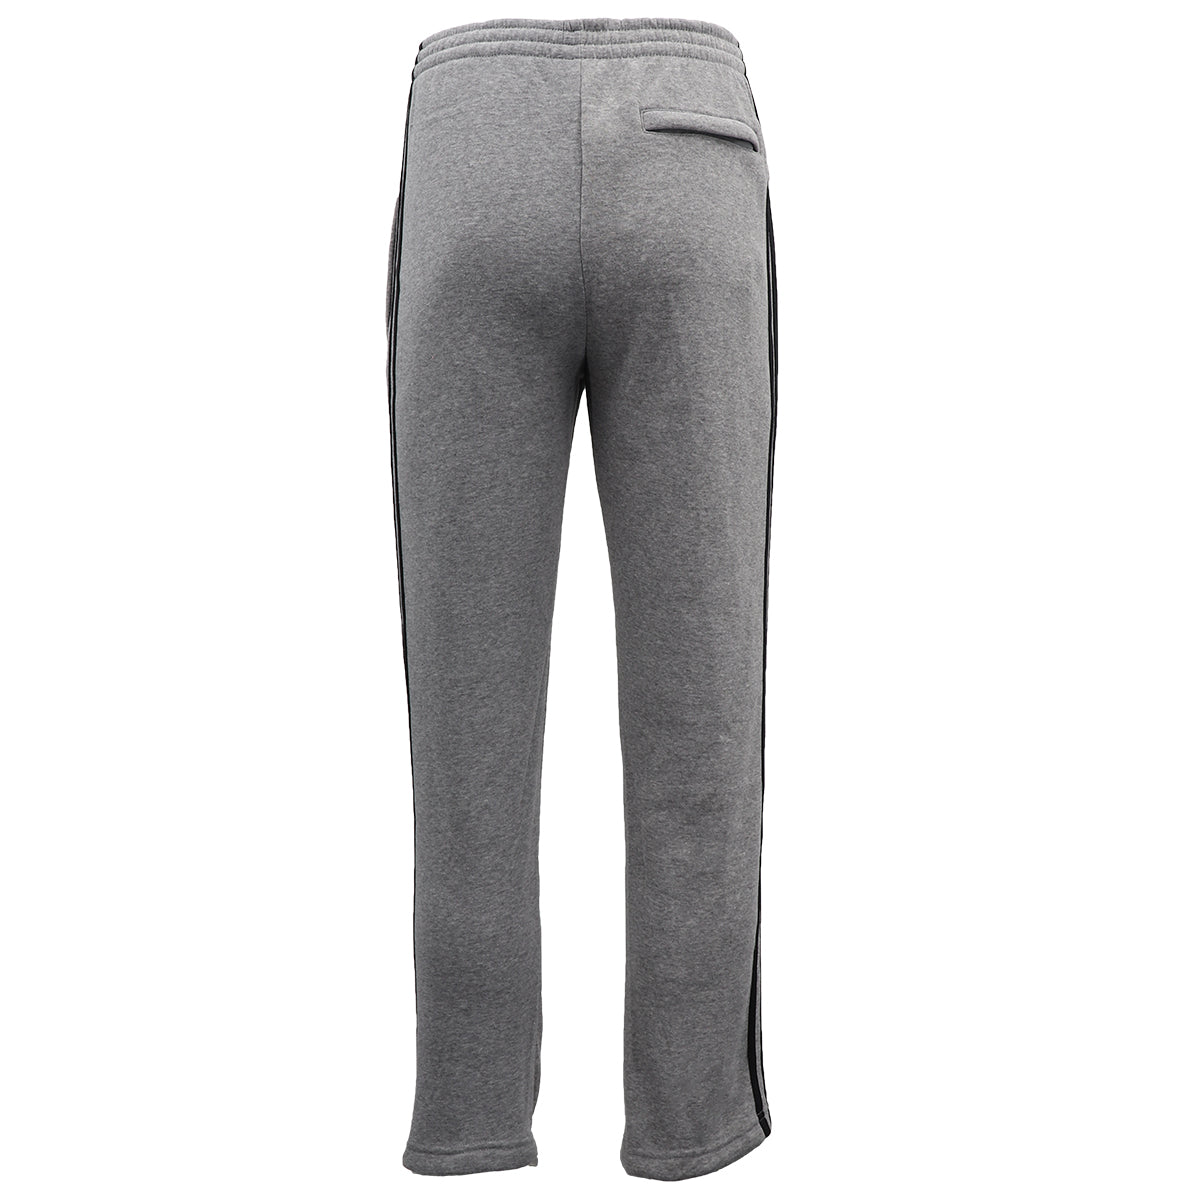 Men's Fleece Casual Sports Track Pants w Zip Pocket Striped Sweat Trousers S-6XL, Dark Grey, M